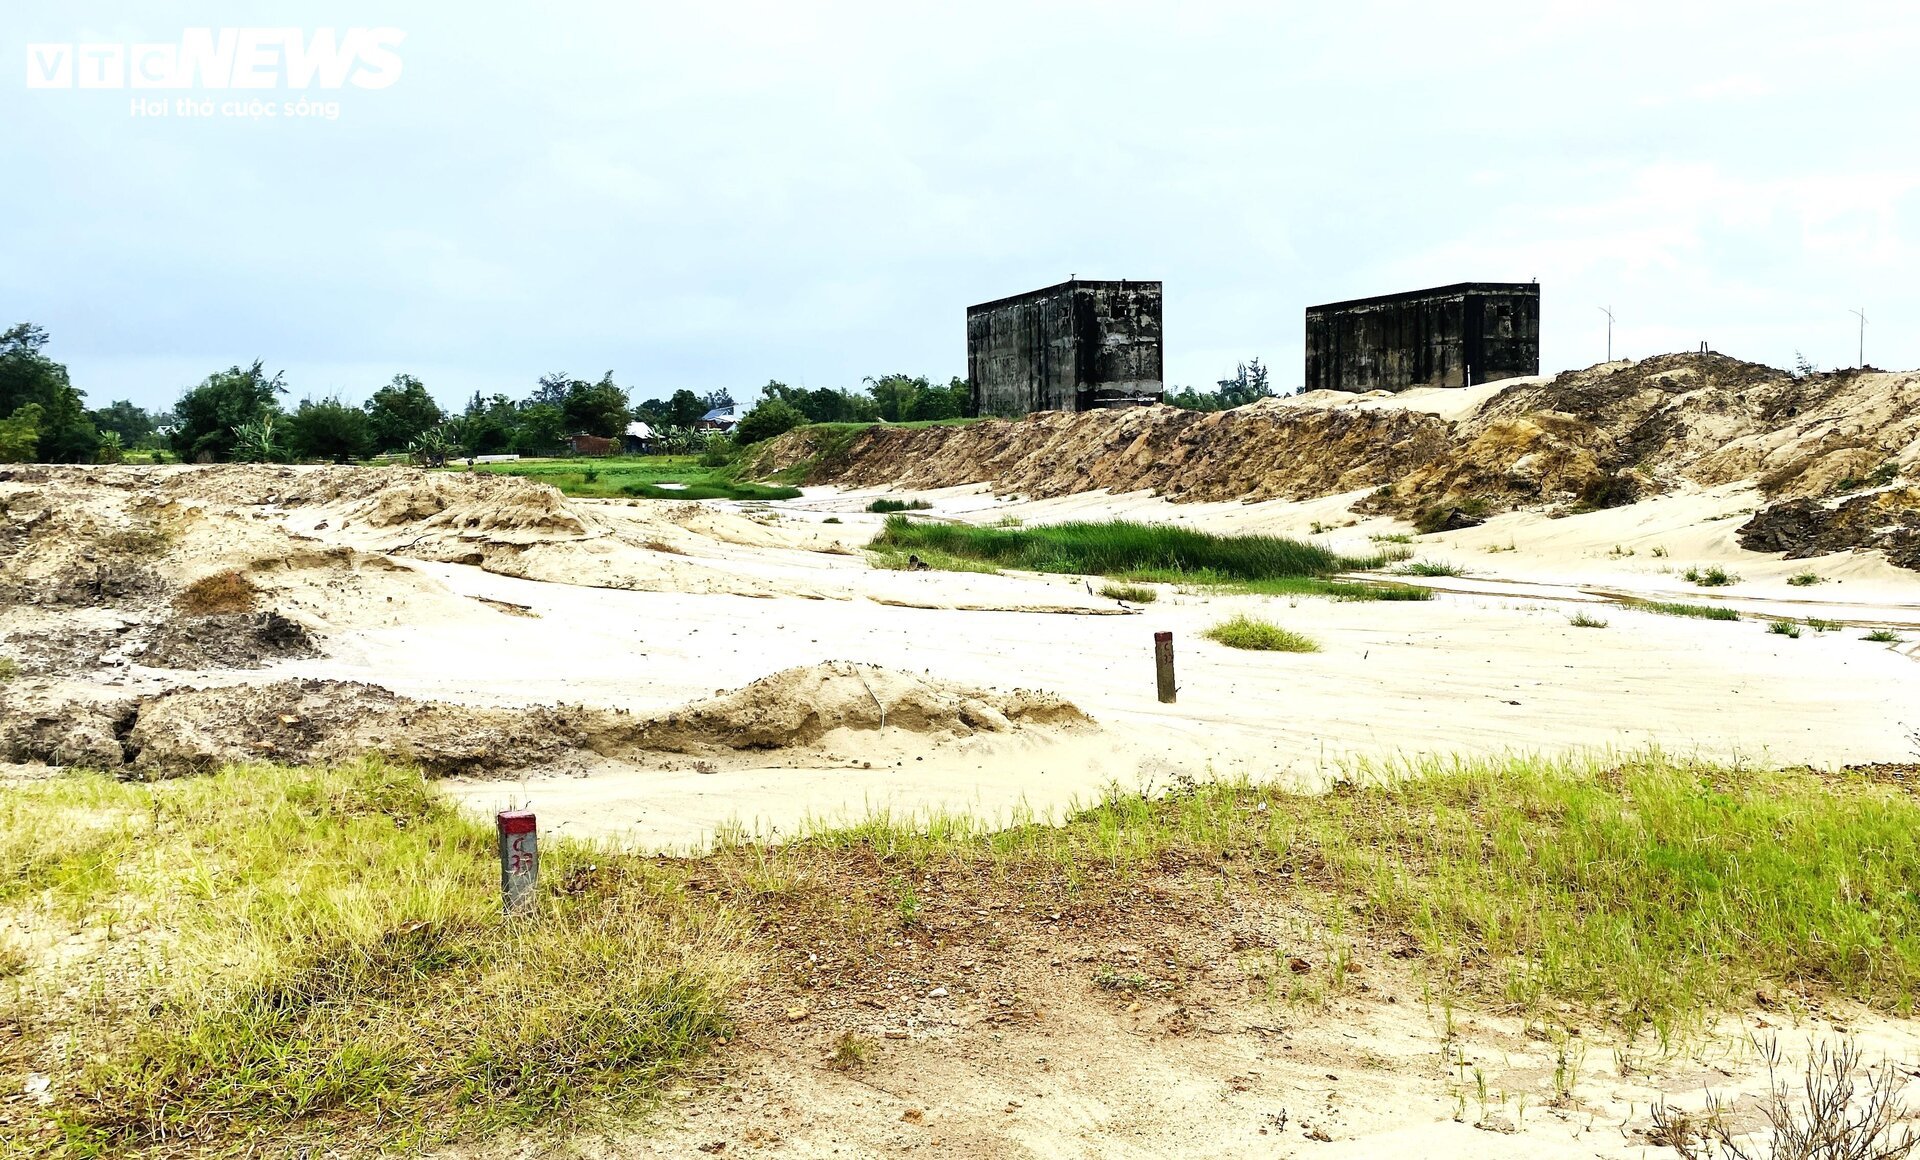 1 tháng trước hạn nghiệm thu, khu đô thị 4,6ha ở Quảng Nam vẫn là bãi đất trống - Ảnh 3.